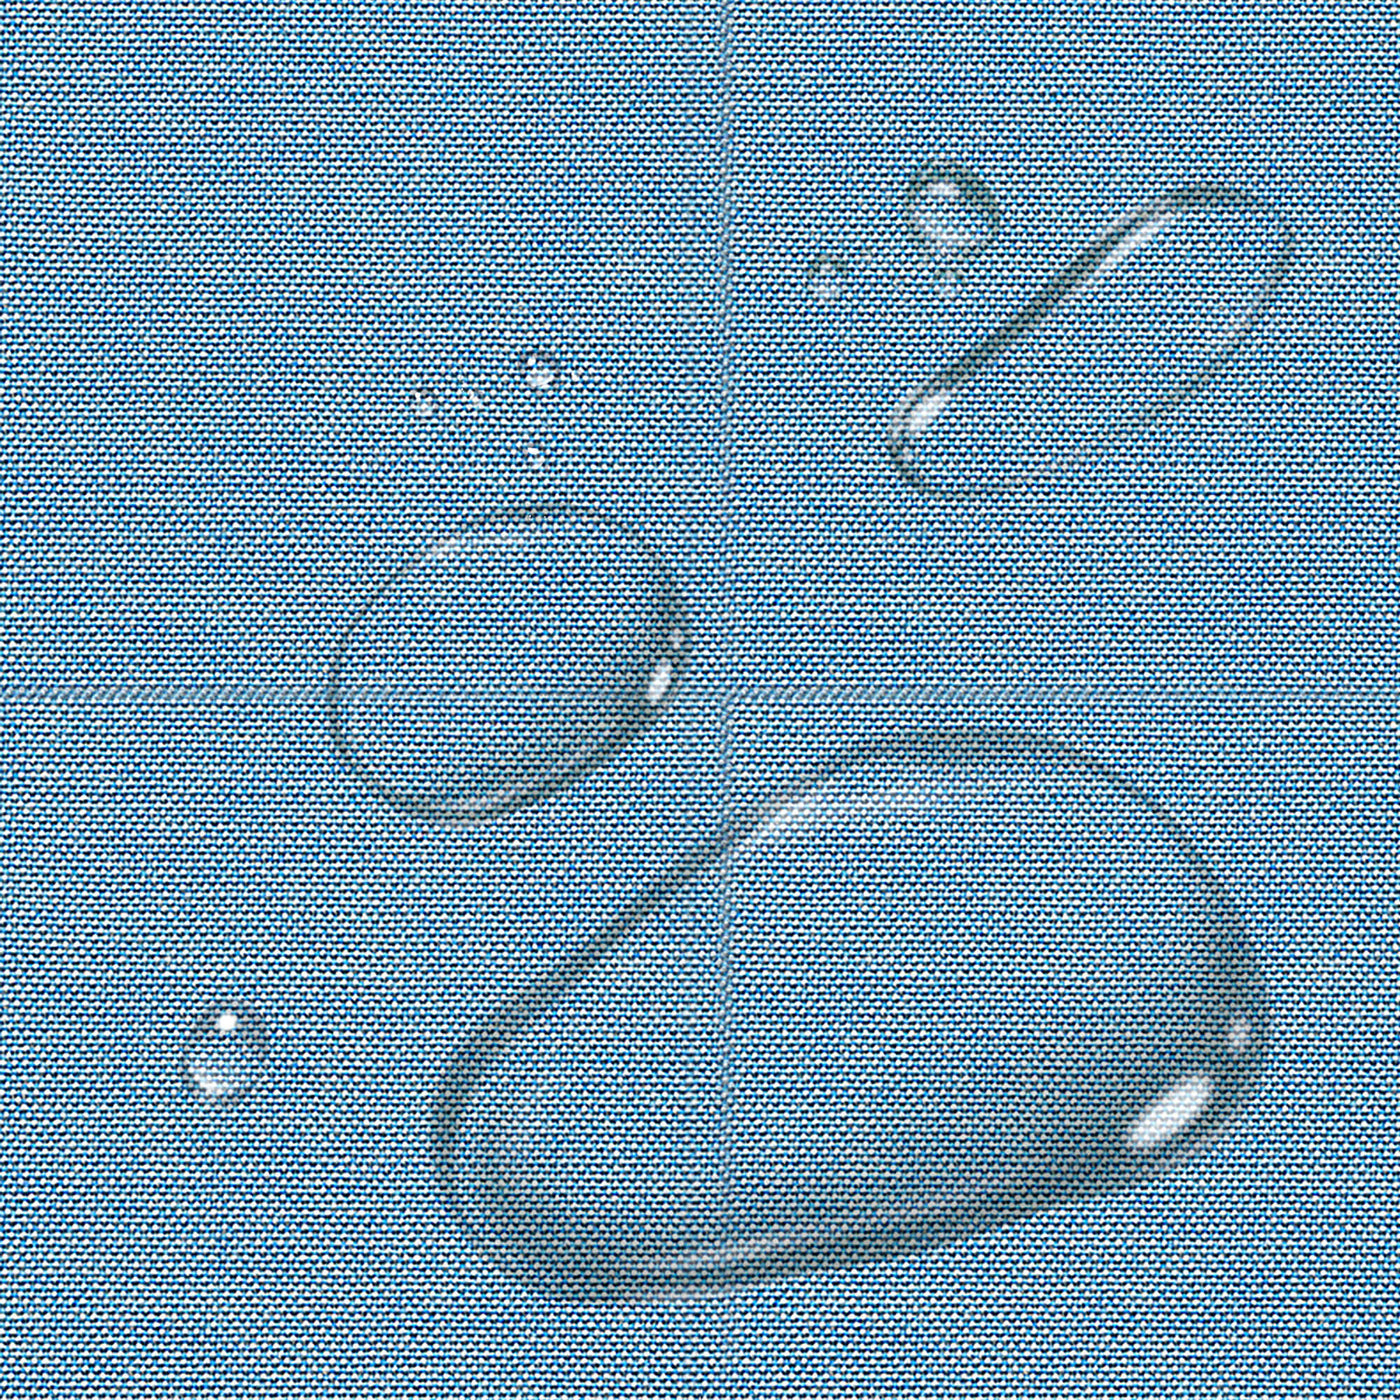 PENGI Outdoor Curtains Waterproof - Blend Crystal Blue